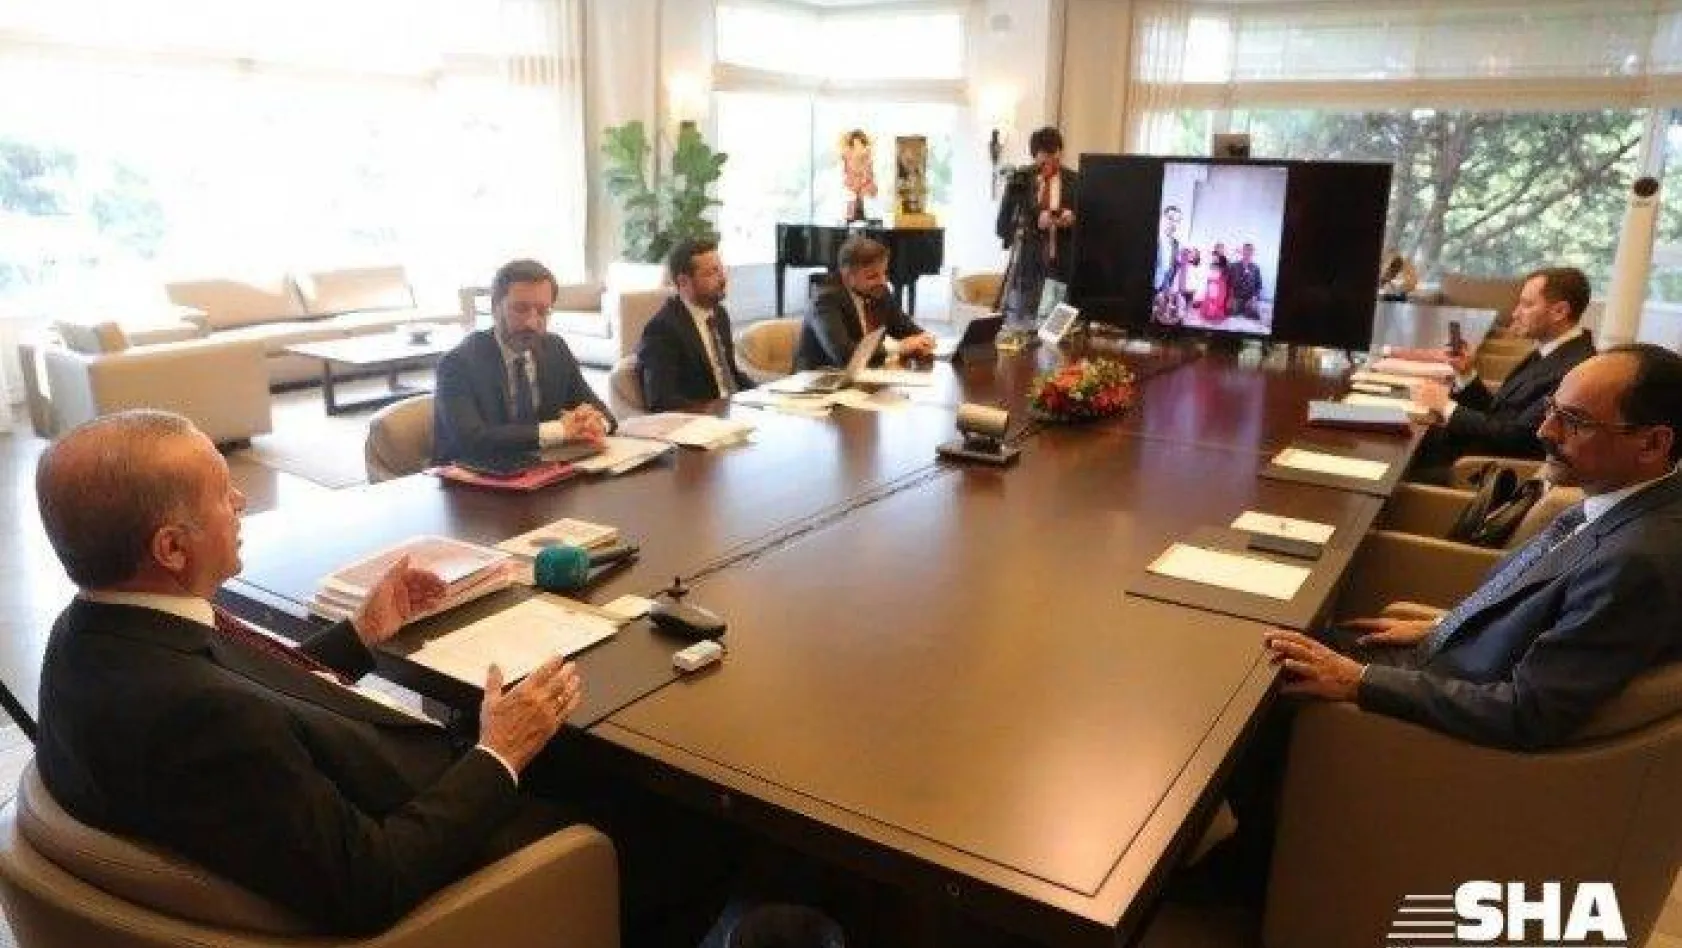 Cumhurbaşkanı Erdoğan, video konferans yöntemiyle vatandaşlarla konuştu